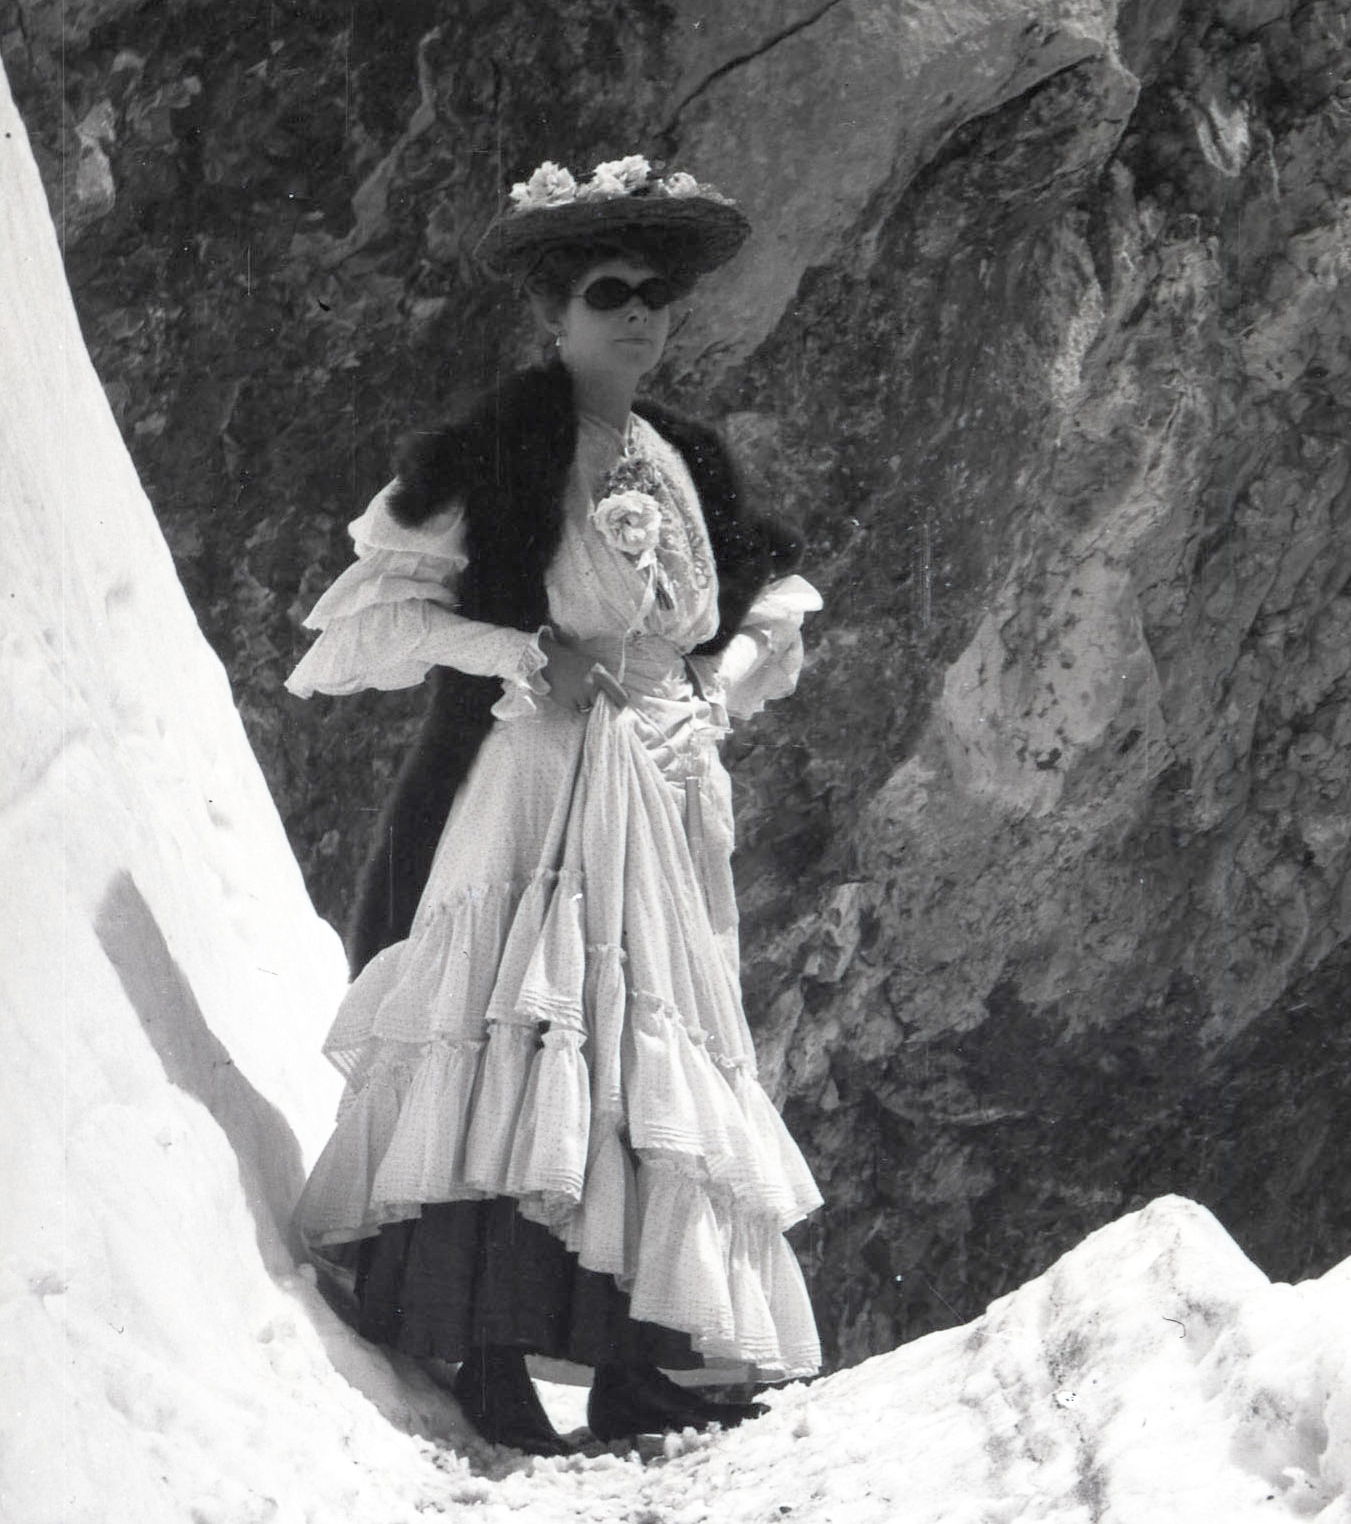 A woman climbing in the Alps circa 1911